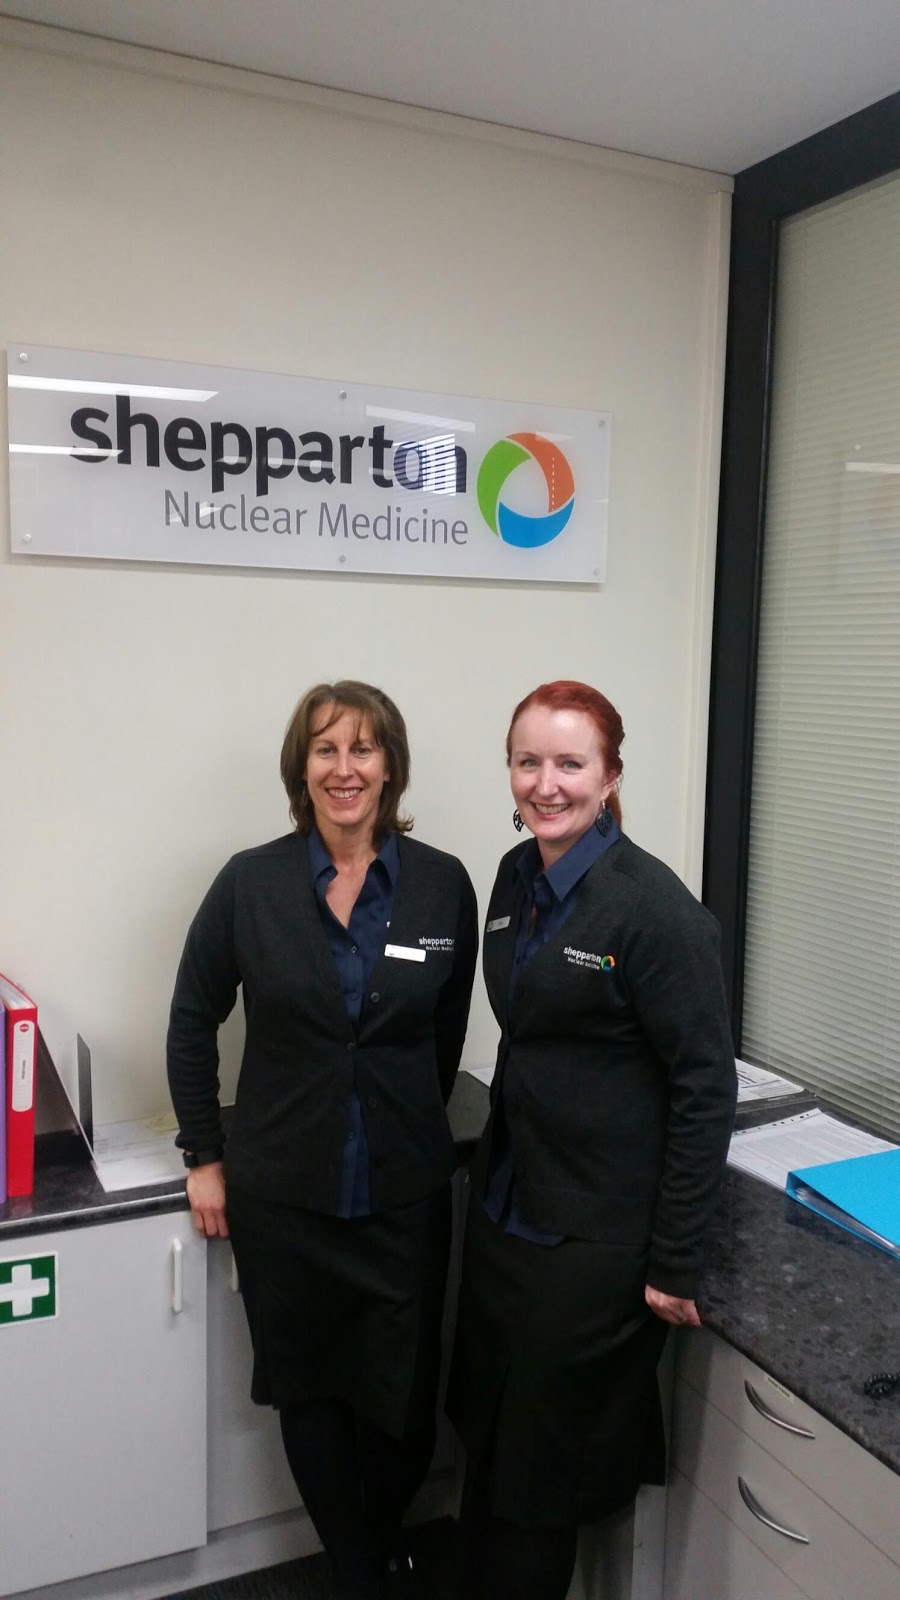 Shepparton Nuclear Medicine | health | Shepparton Nuclear Medicine Goulburn Valley Health, Graham St, Shepparton VIC 3630, Australia | 0358230300 OR +61 3 5823 0300